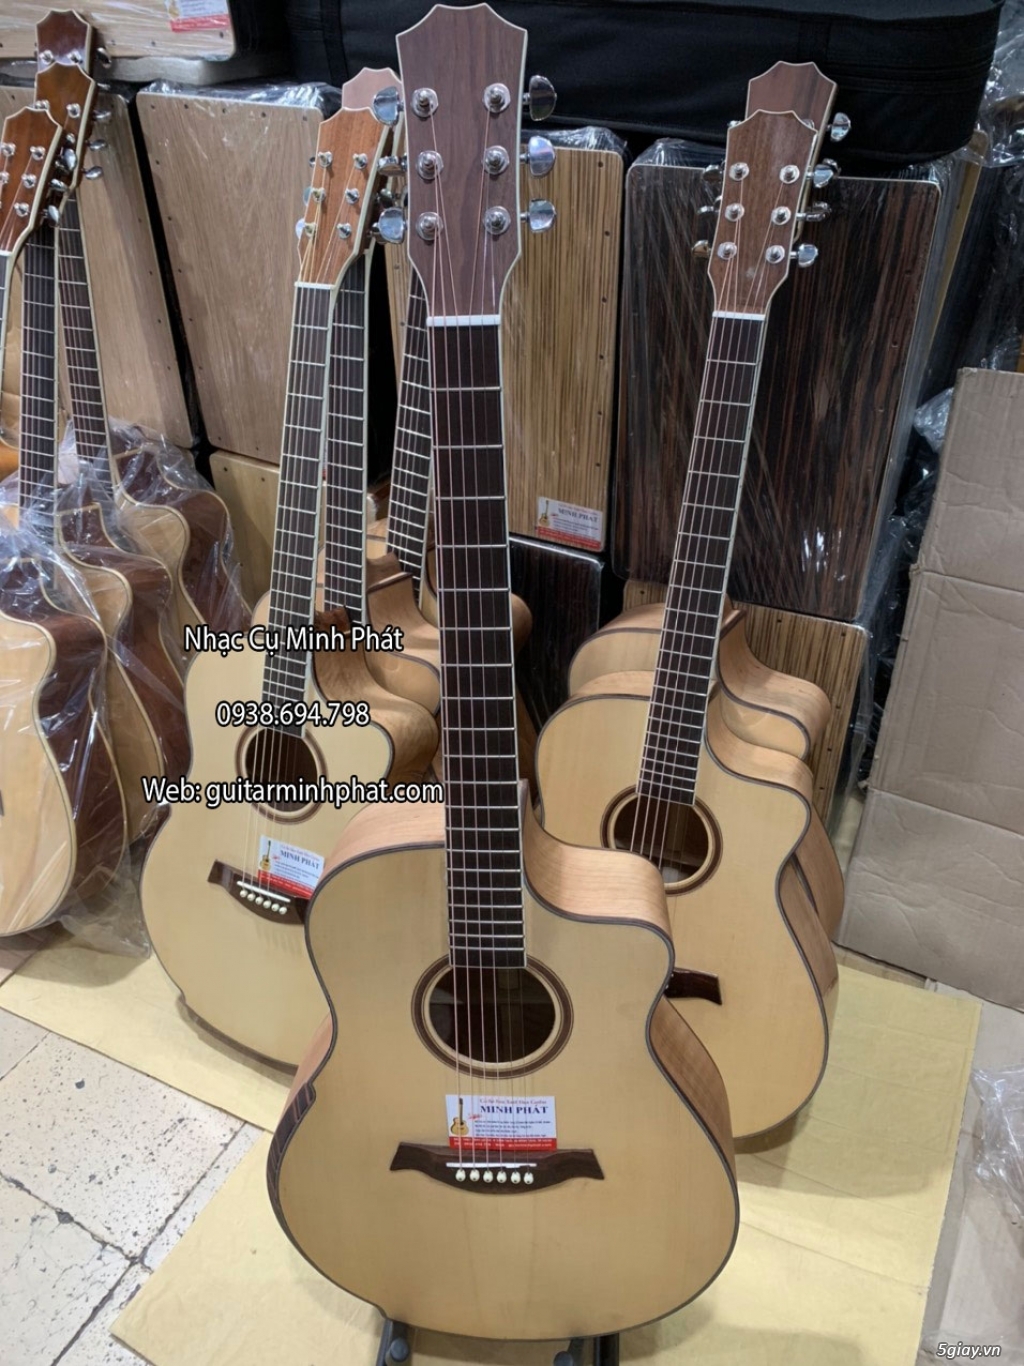 Bán đàn guitar, ukulele, kalimba giá rẻ ở quận Gò Vấp TPHCM - 15